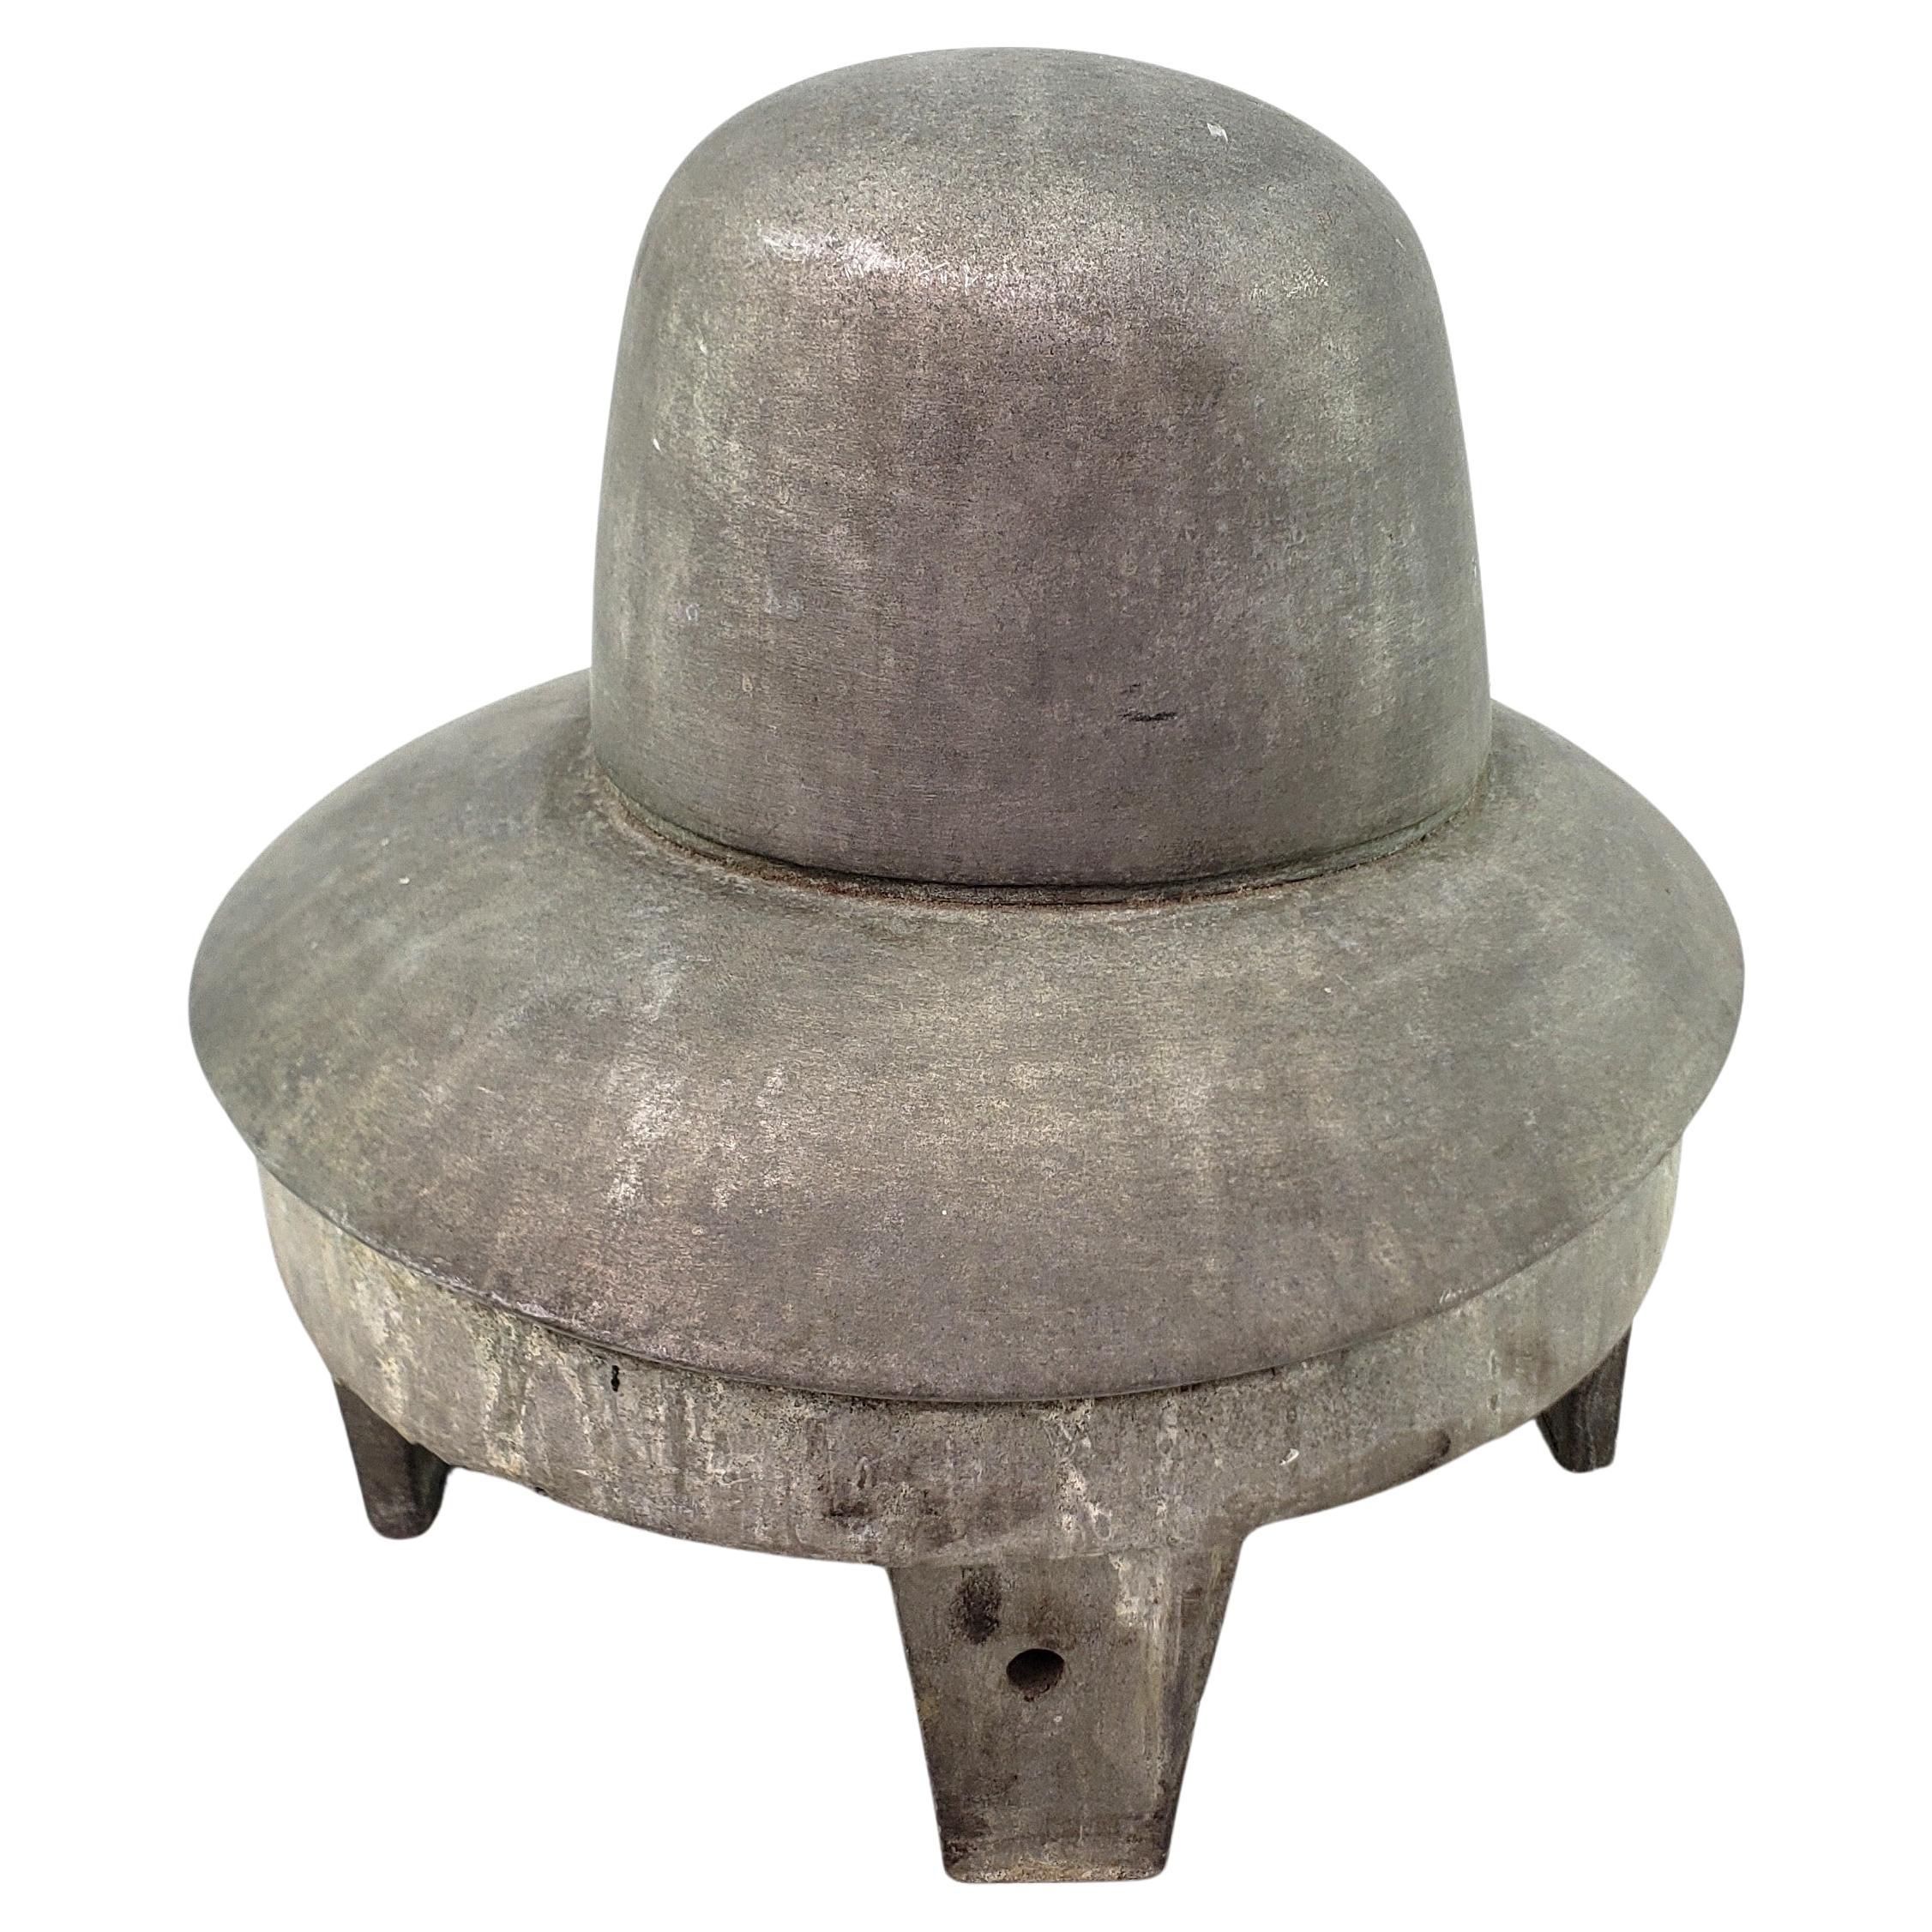 Antique Cast Aluminum Milliner or Ladies Industrial Hat Form